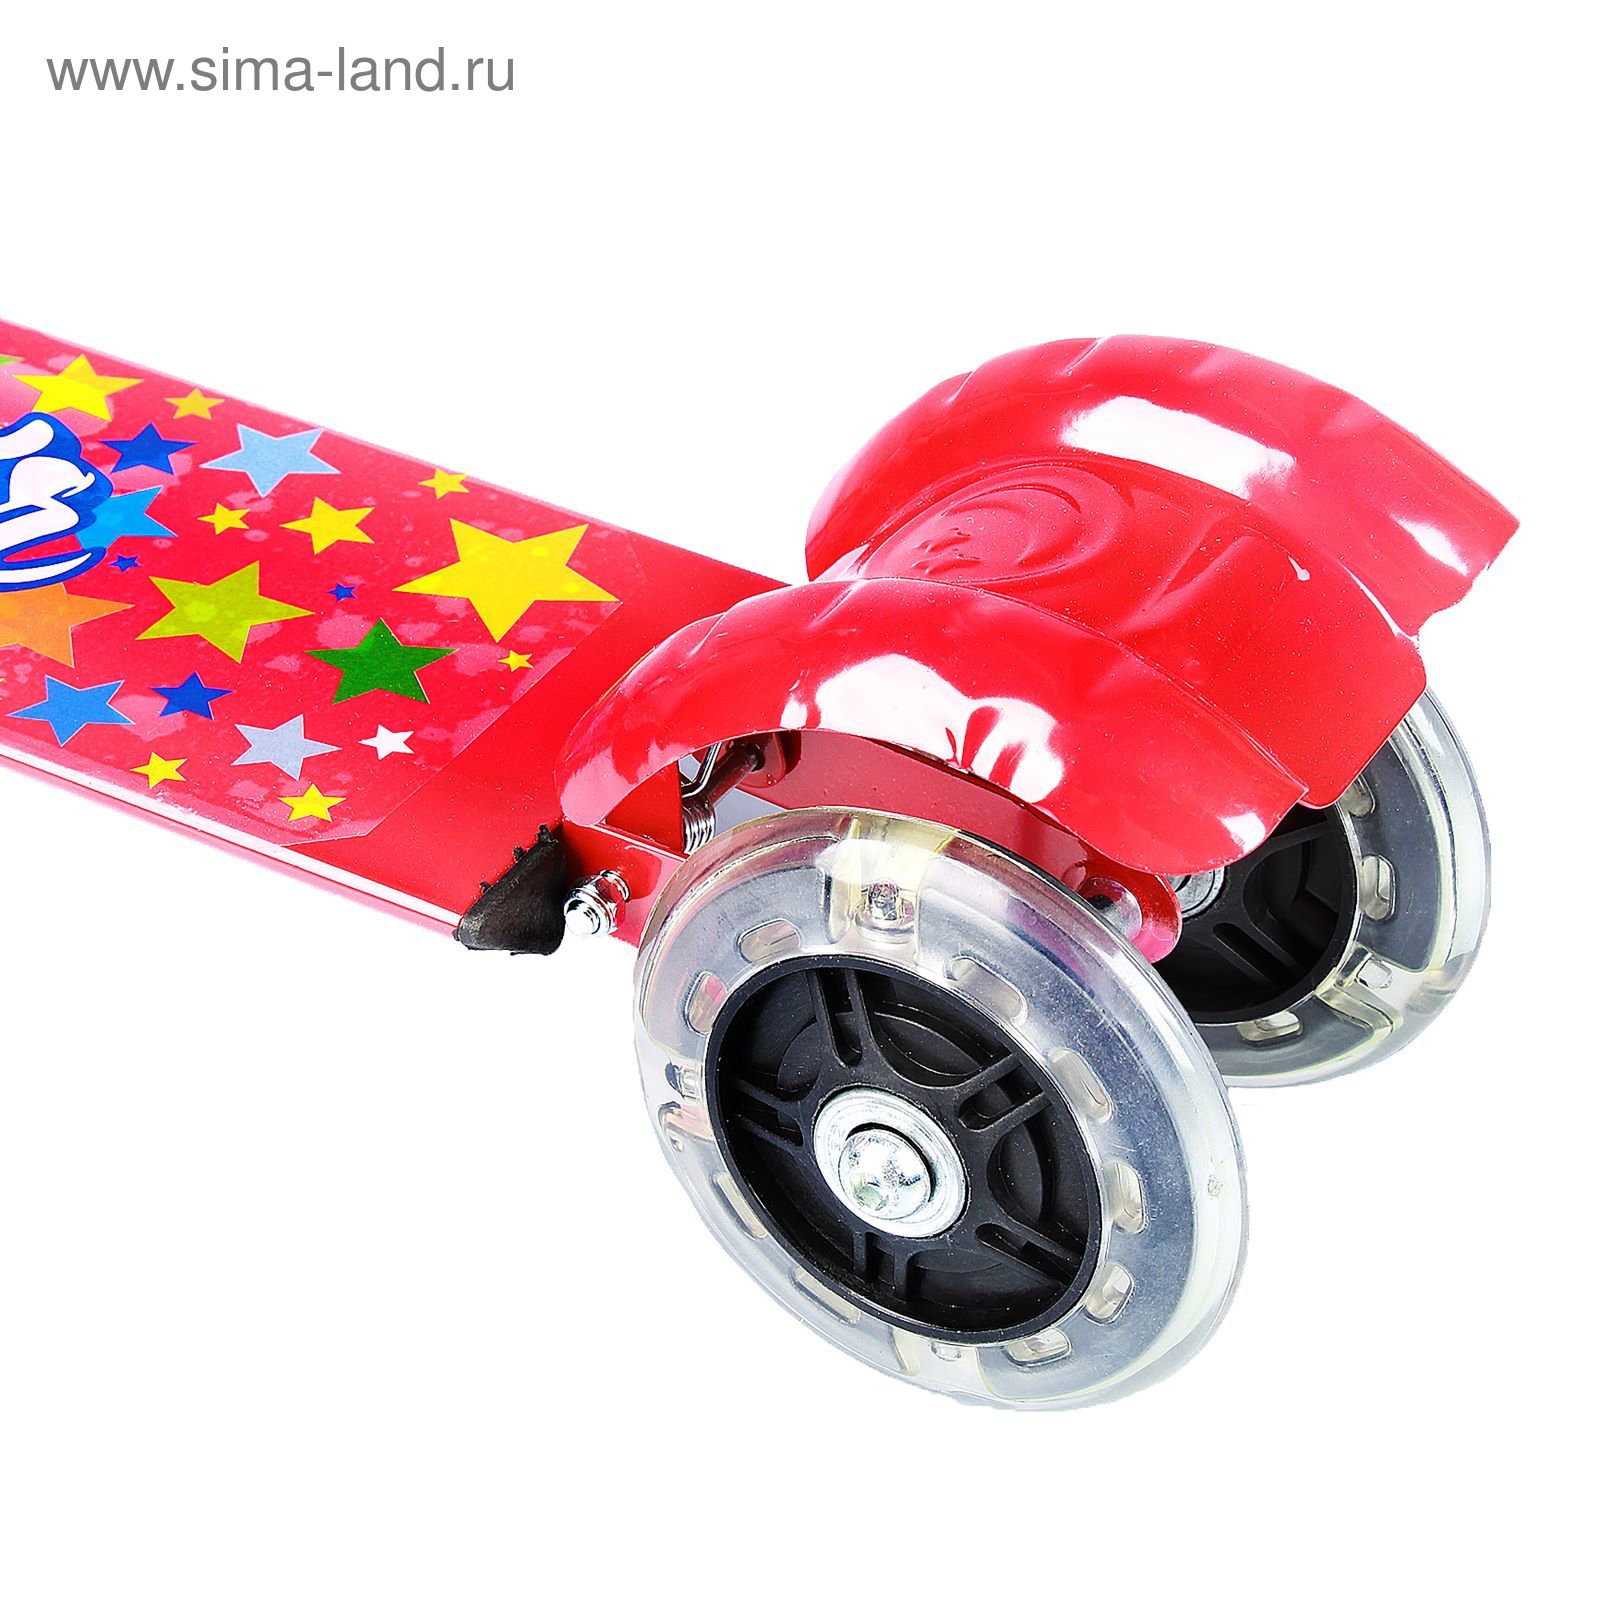 Самокат стальной Star ОТ-508, три колеса PVC d= 100 мм светящиеся, цвет красный